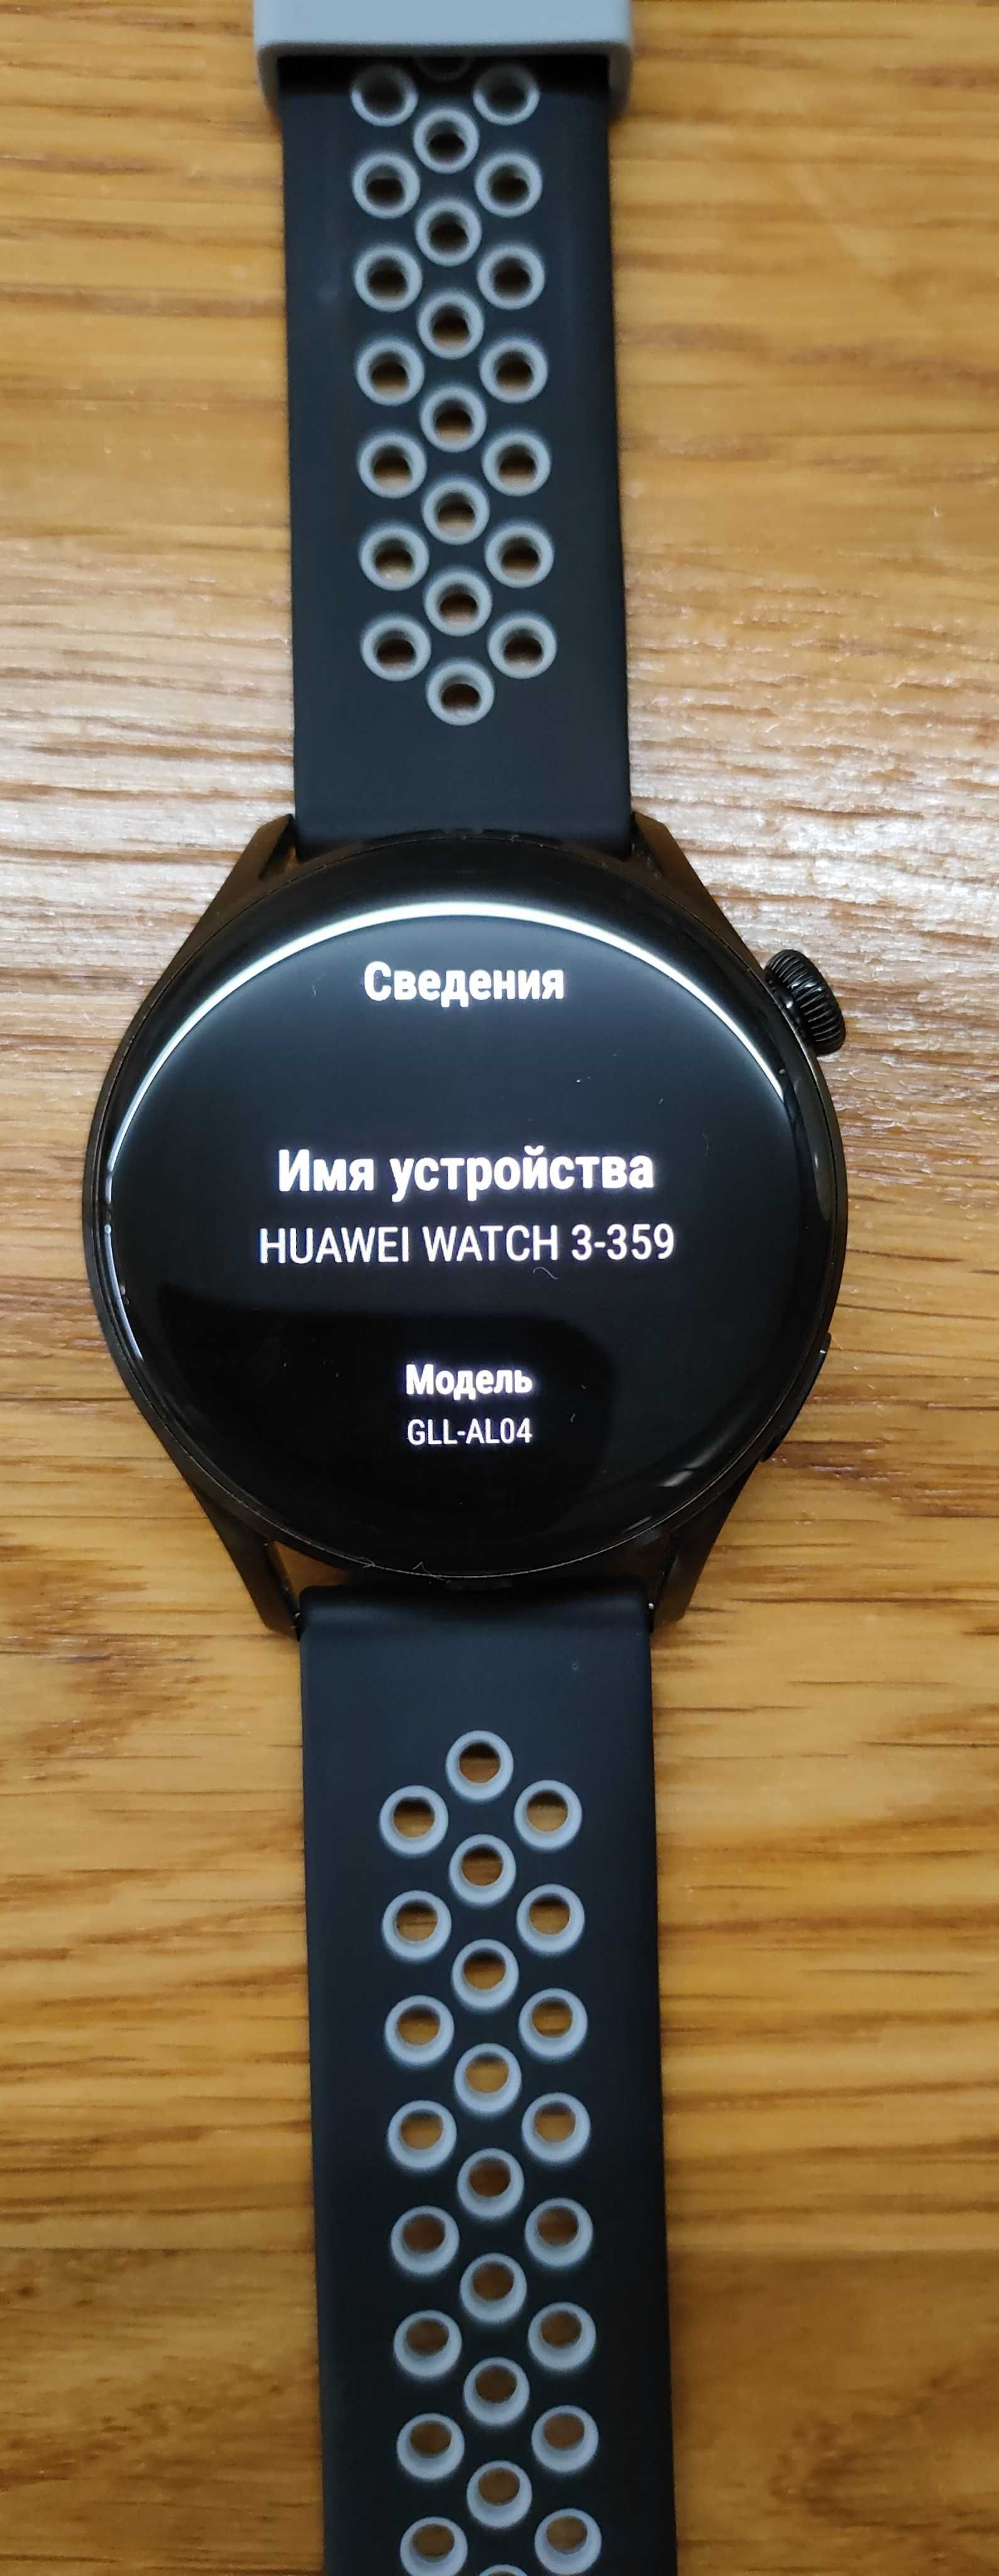 Huawei Watch 3 Black(Gll-al04).